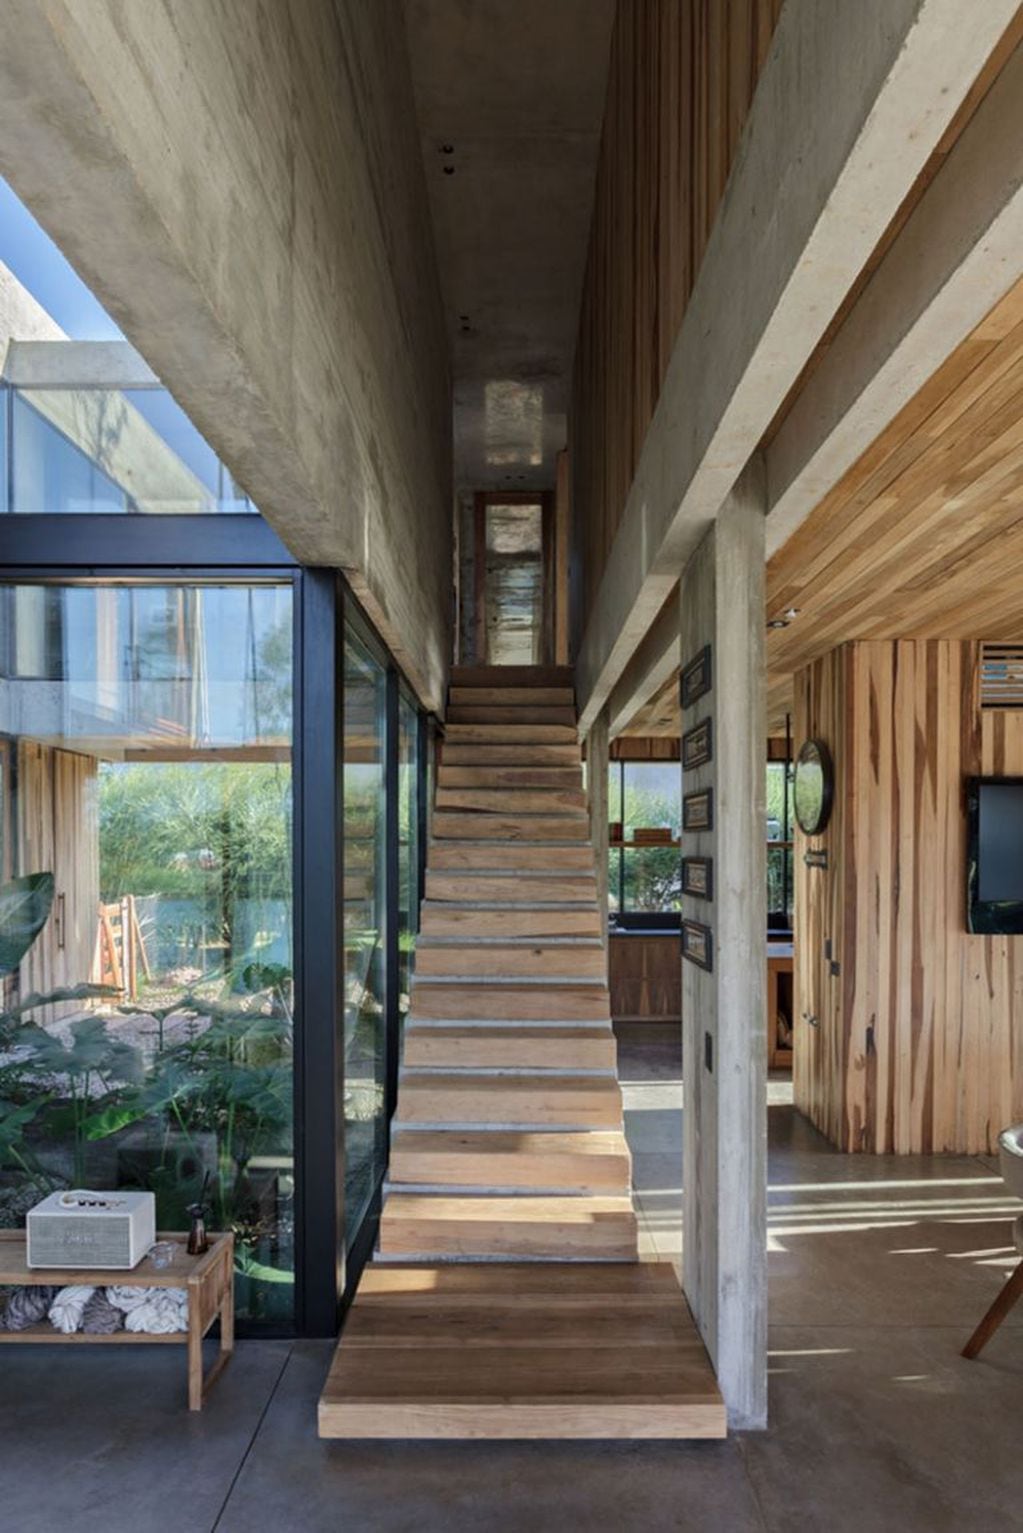 La casa tiene un estilo único basado en la madera